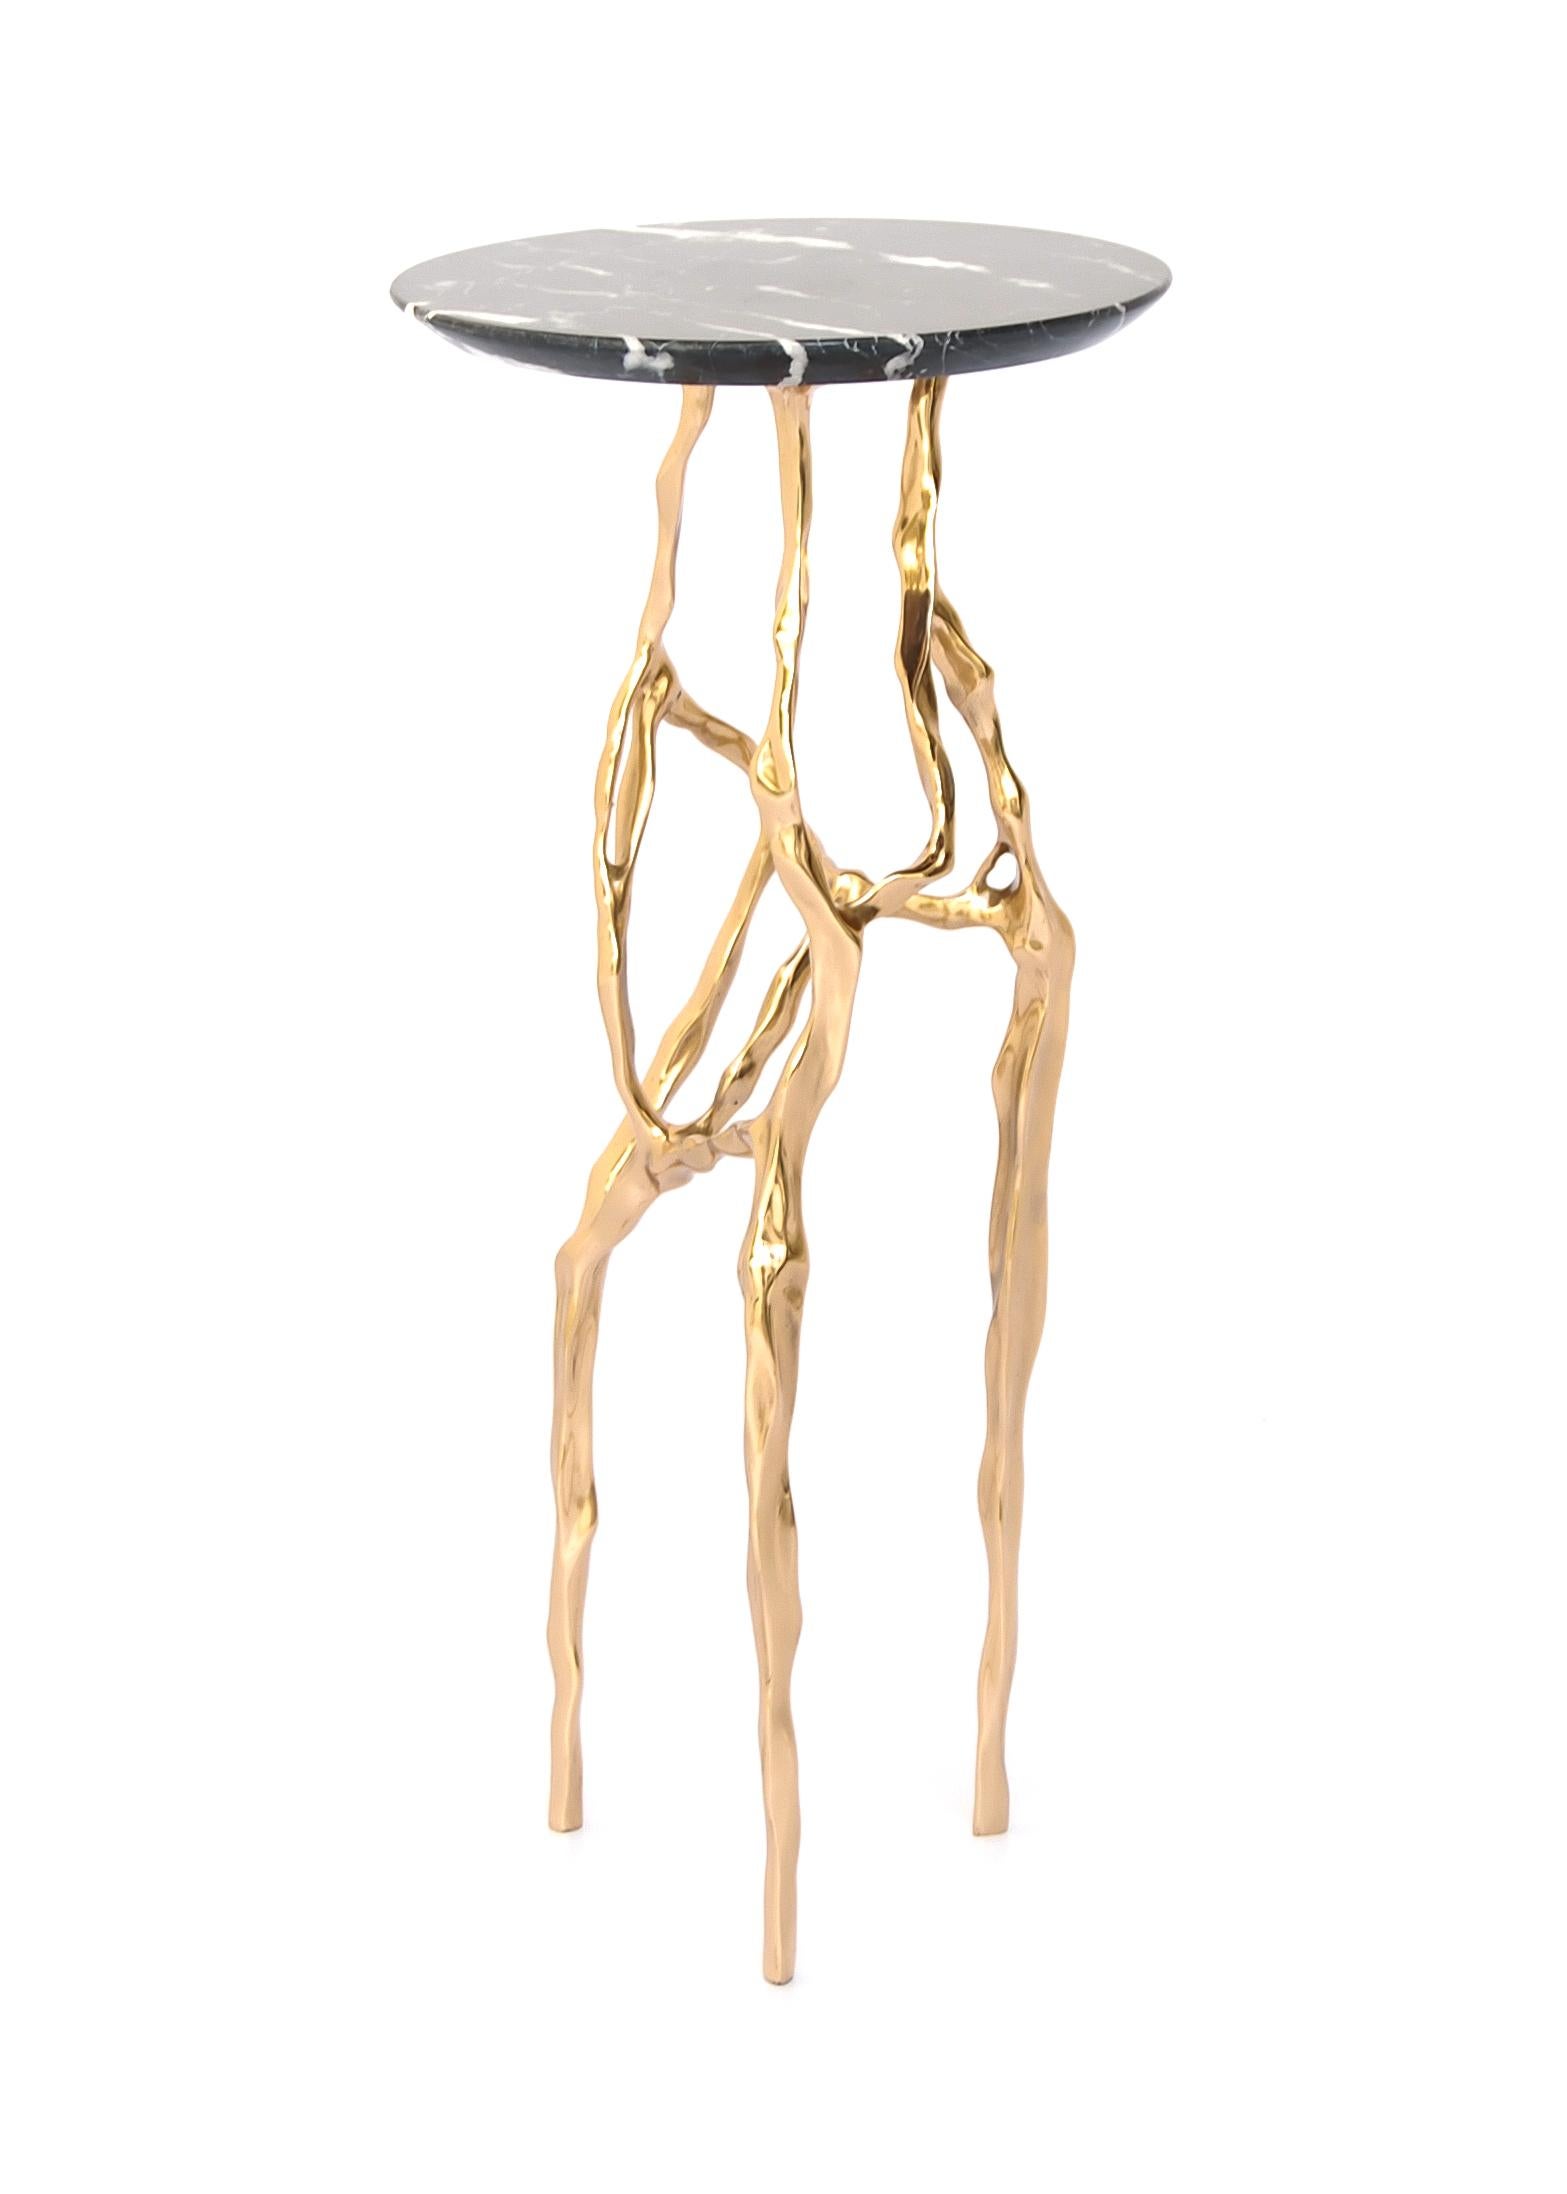 Table à boire Sid avec plateau en marbre Nero Marquina par Fakasaka Design
Dimensions : L 30 cm, P 30 cm, H 61 cm.
MATERIAL : base en bronze poli, plateau en marbre Nero Marquina.
 
Disponible également dans différents matériaux de plateau de table